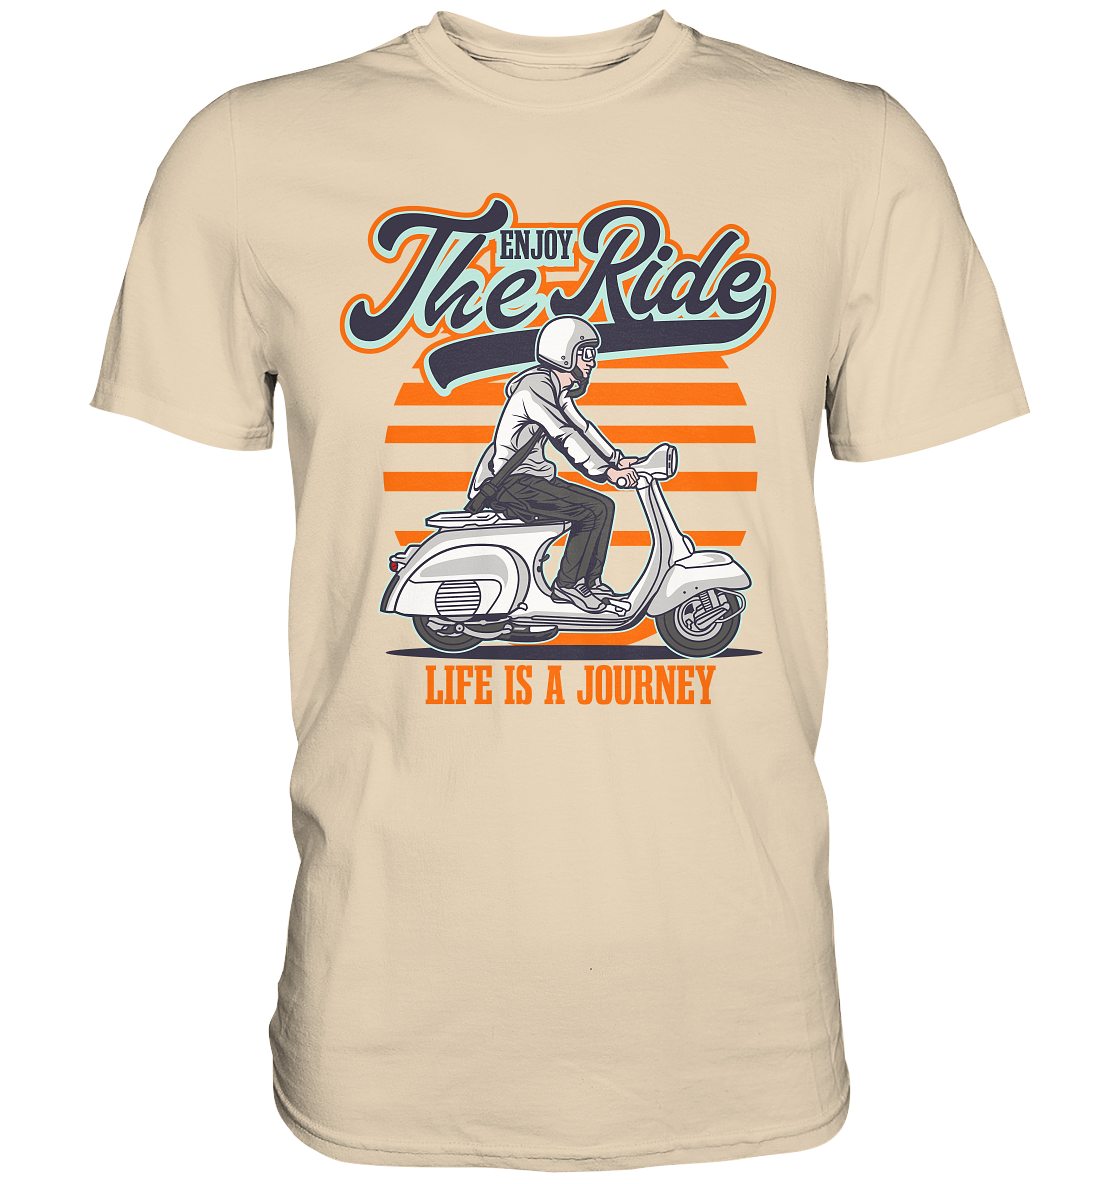 Enjoy the Ride - Premium Unisex Shirt - mehrere Farben